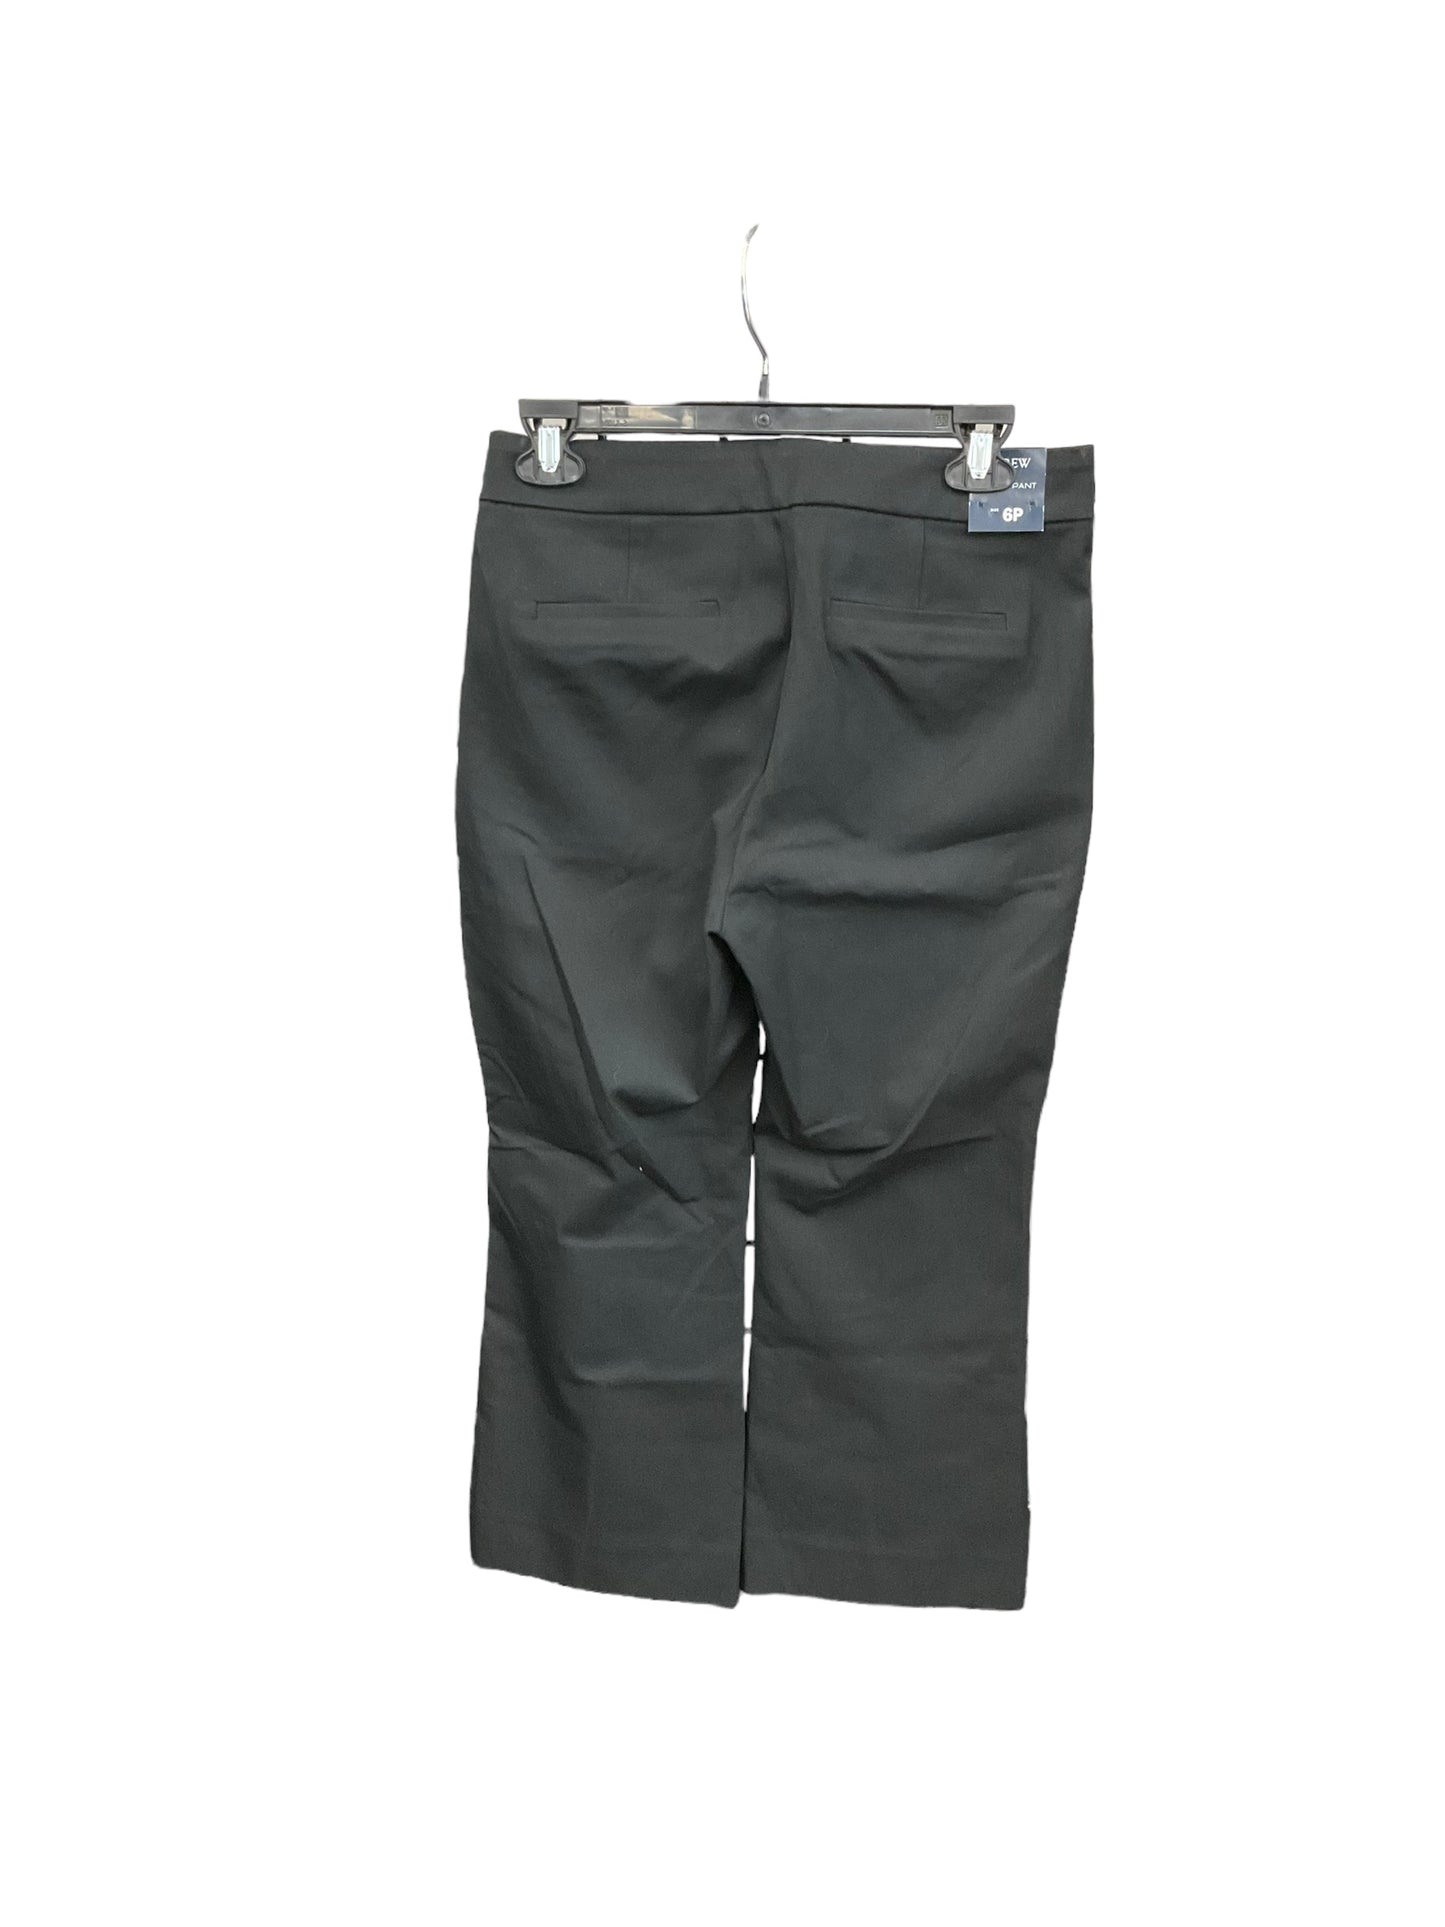 Pants Work/dress By J Crew  Size: 6petite